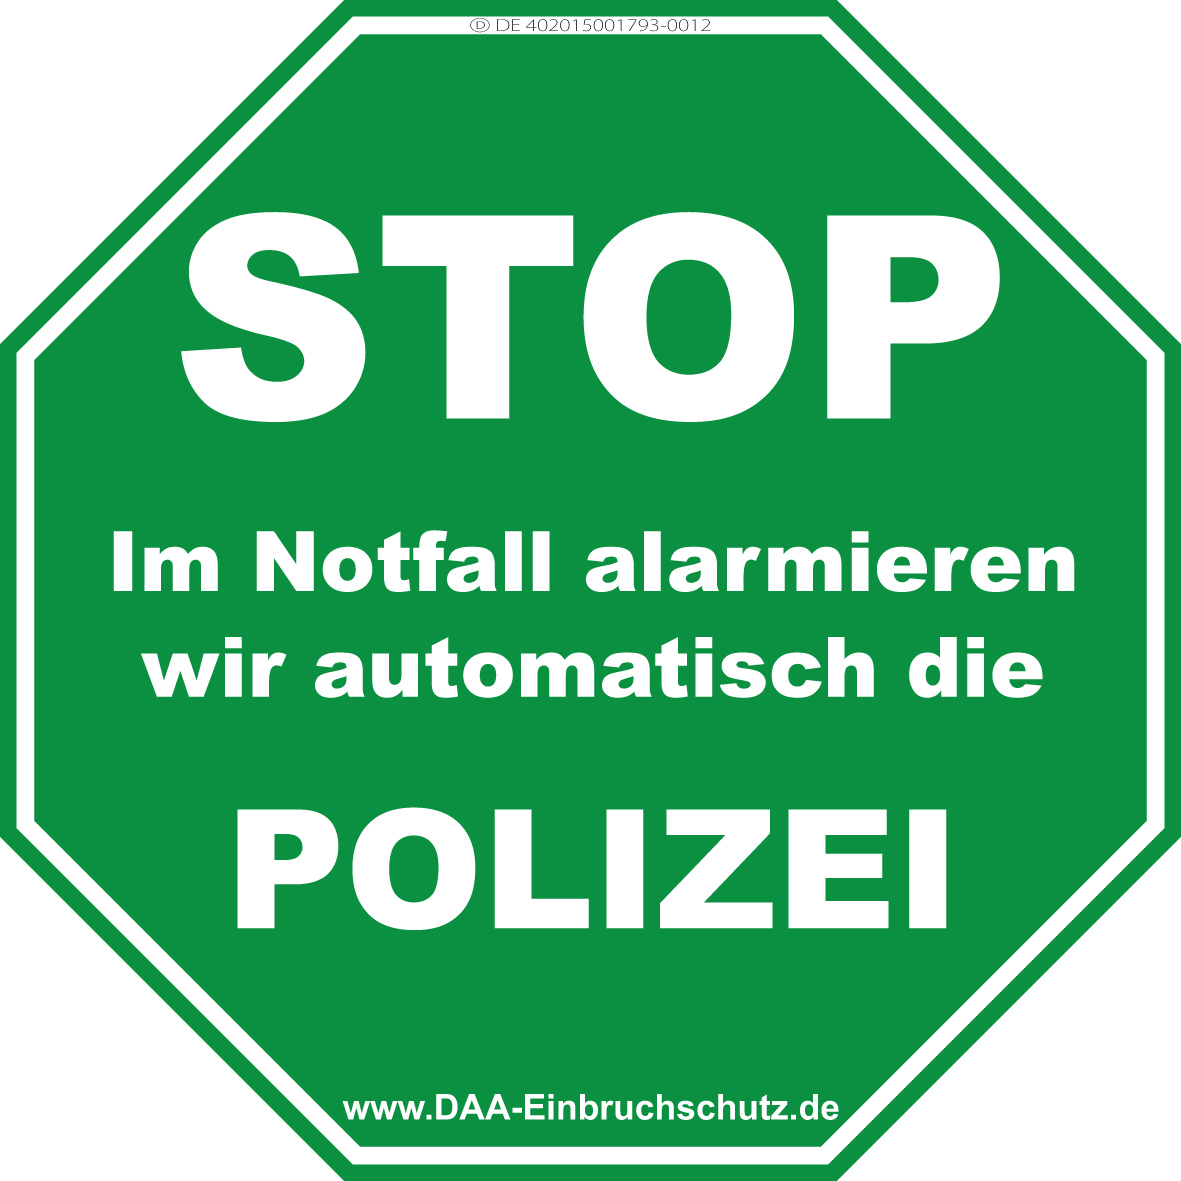 DAA-Einbruchschutz - STOP POLIZEI, Aufkleber, Warnschild, Grün